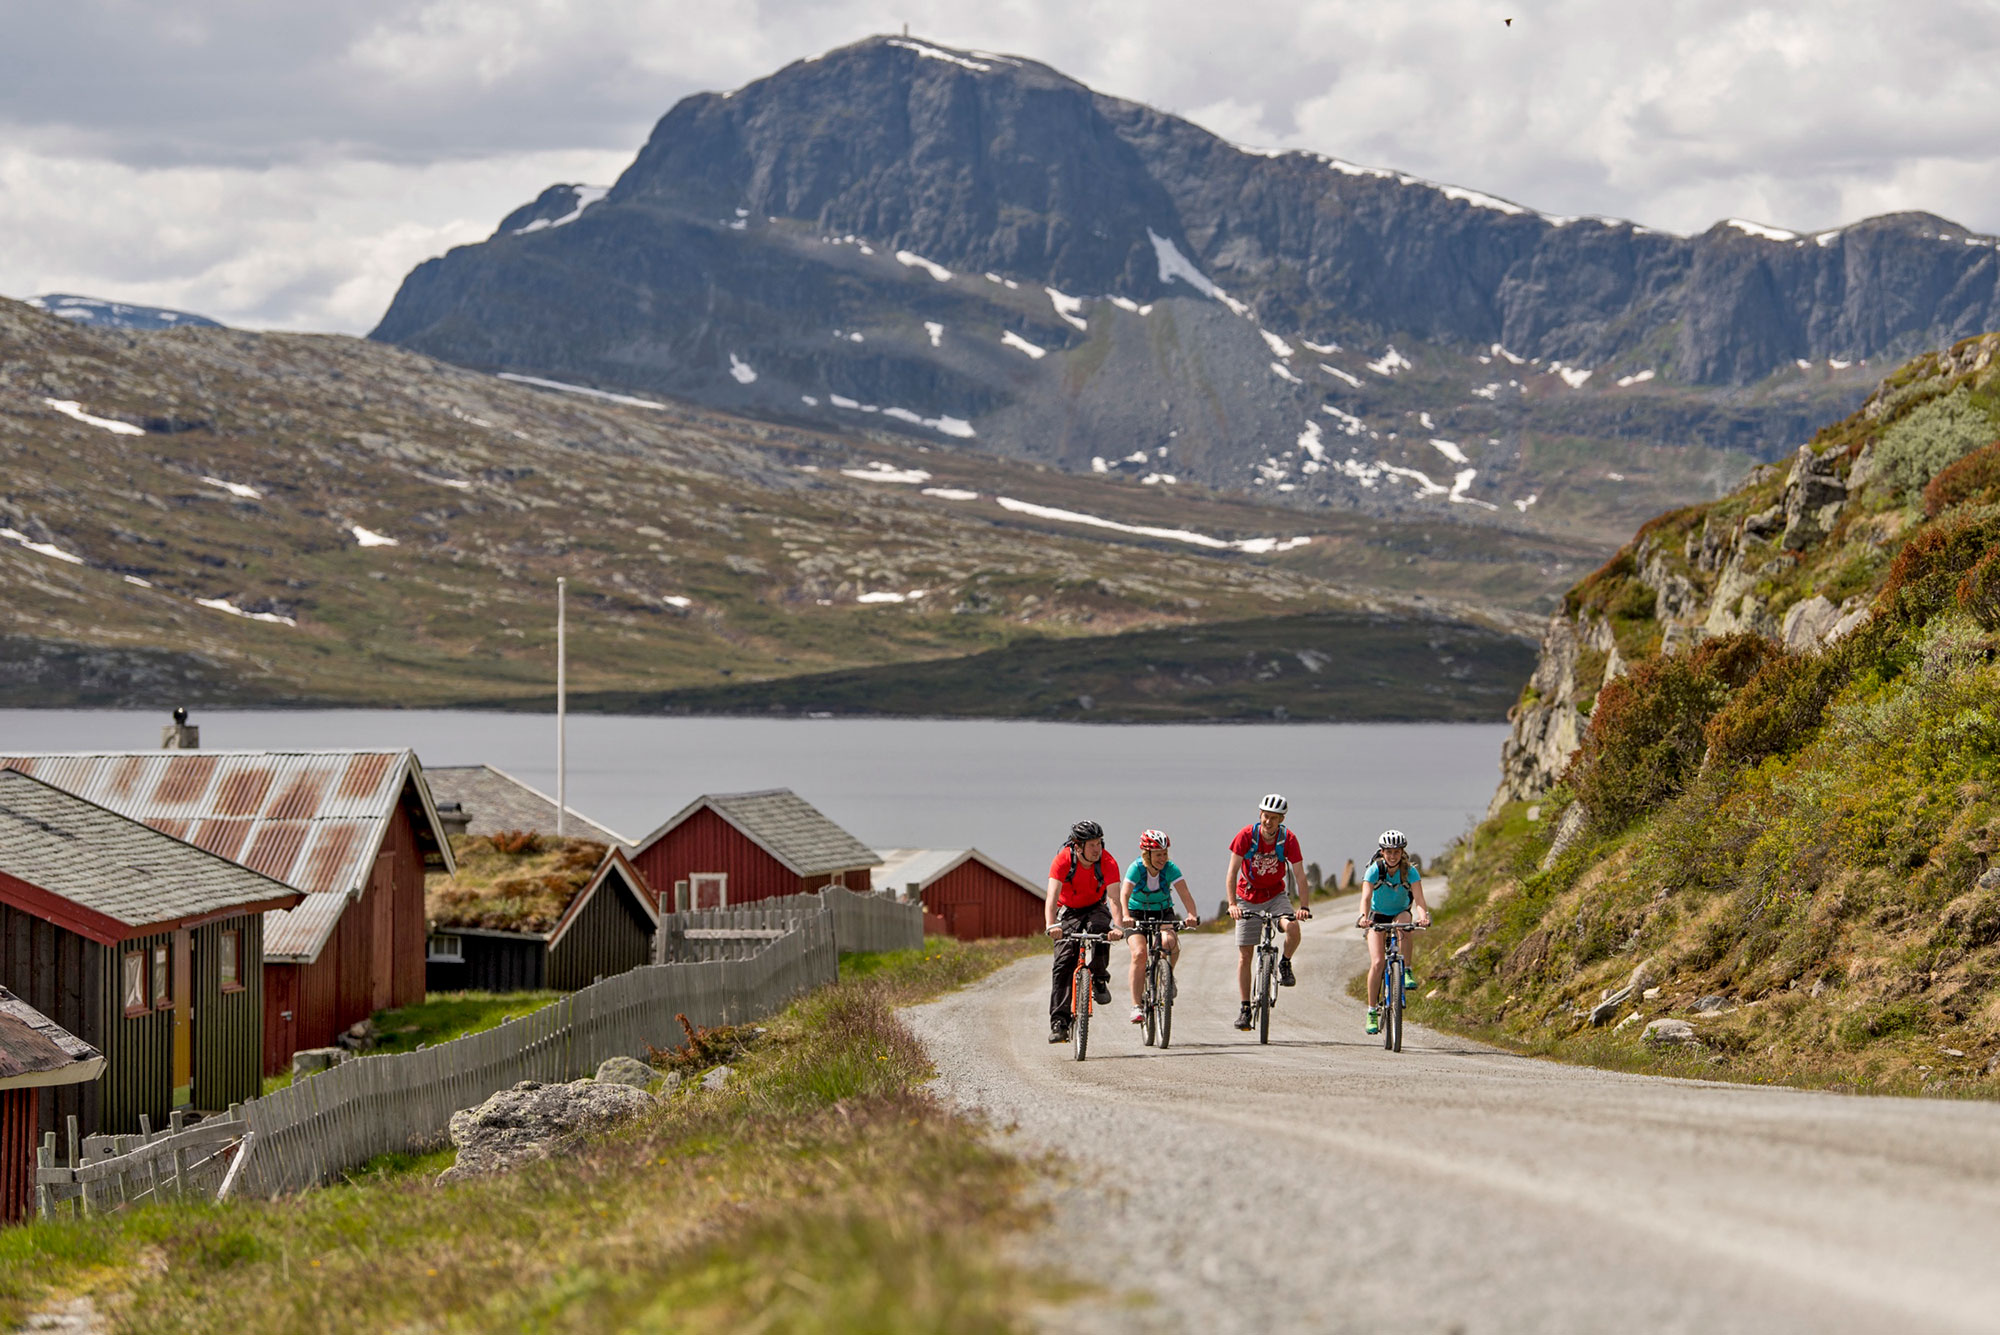 Последний день в Норвегии - велосипедная проглука по парку Jotunheimen